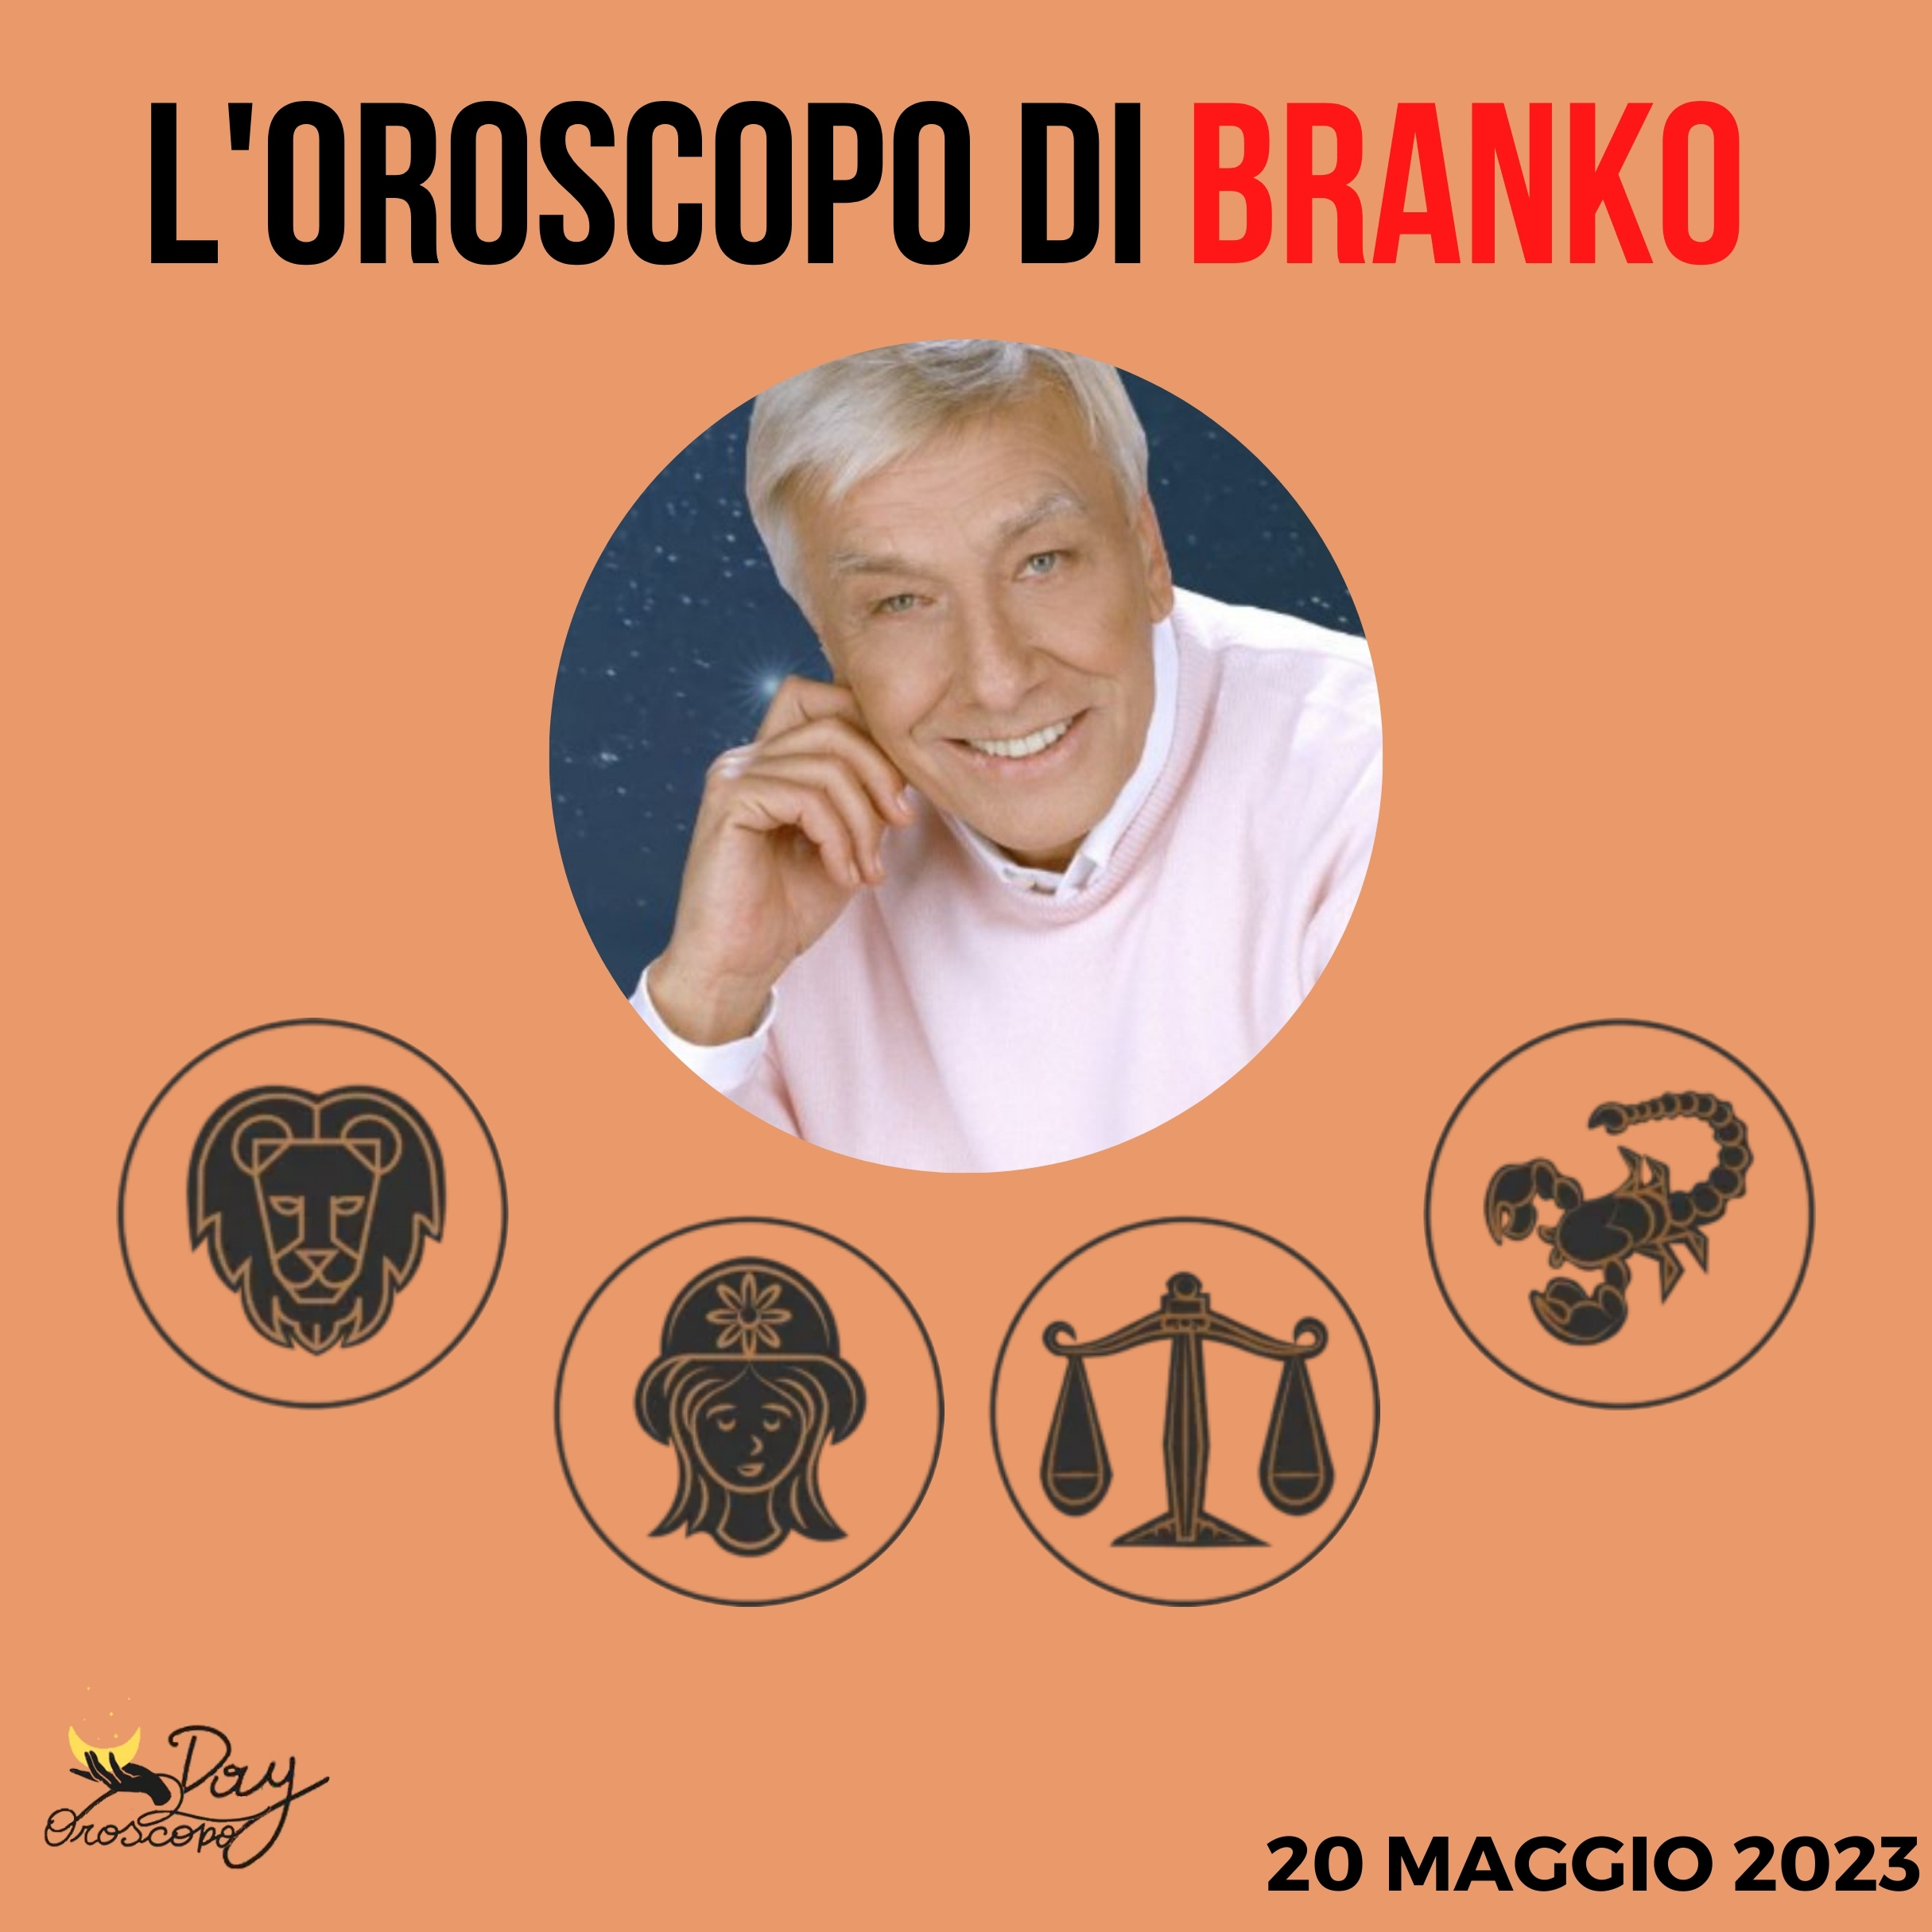 Oroscopo oggi domani Branko 20 maggio Leone Vergine Bilancia Scorpione